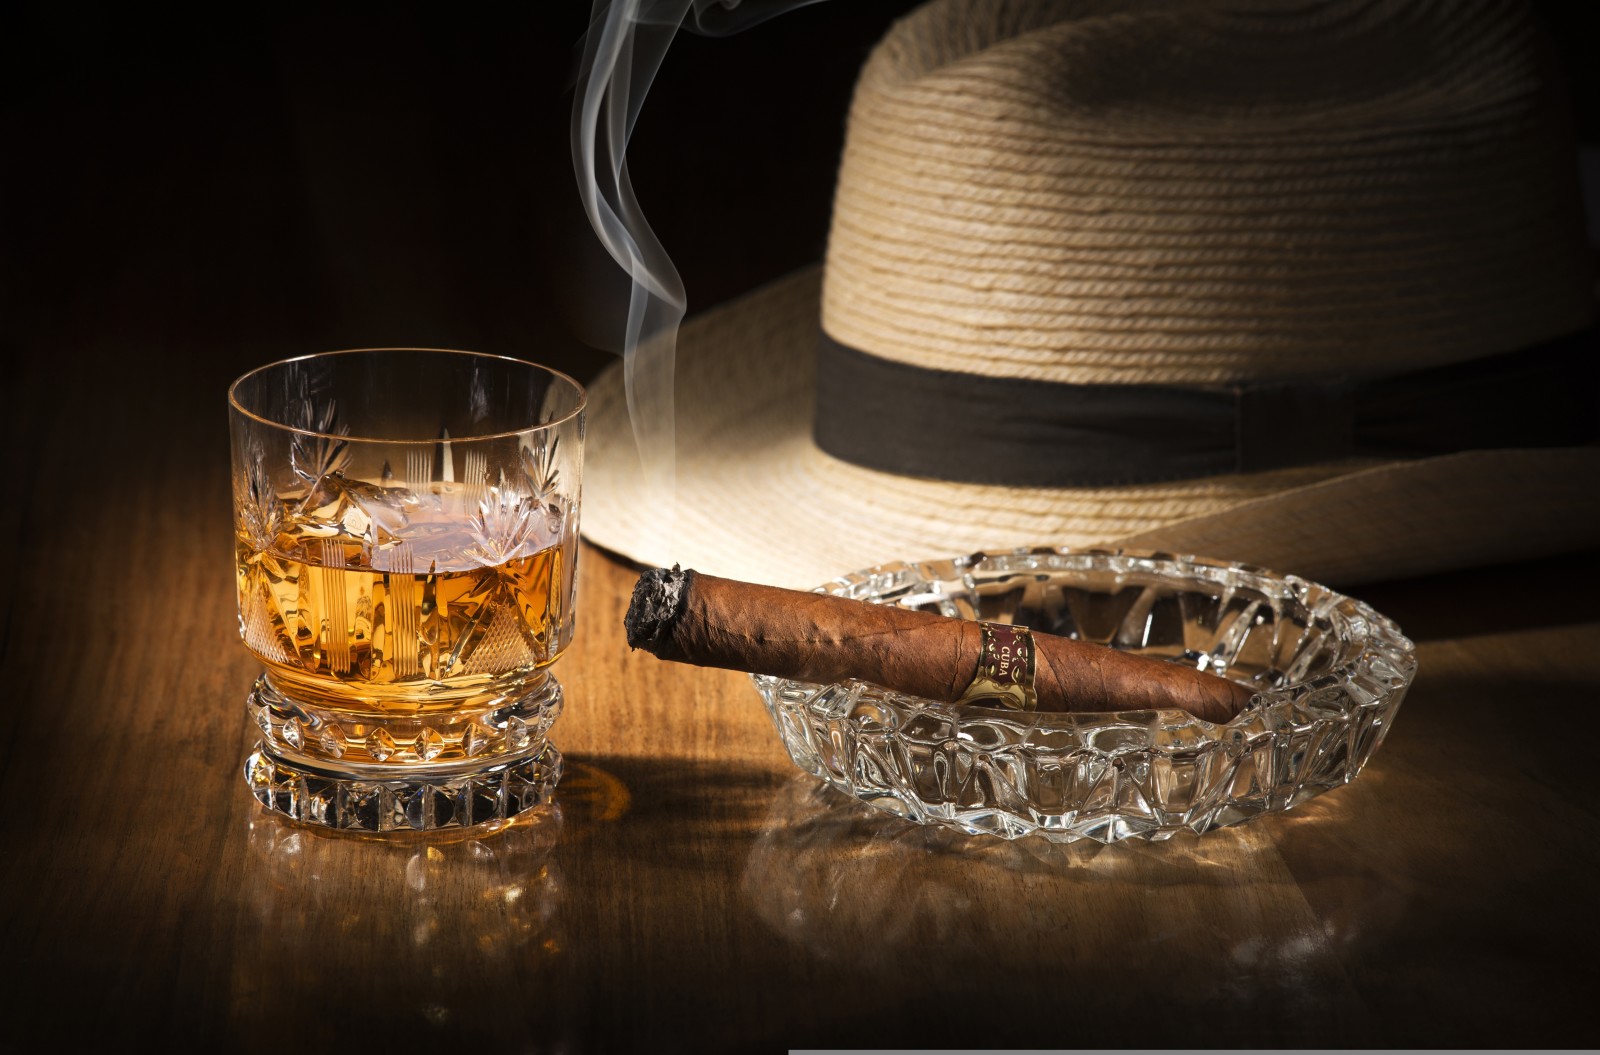 玻璃, 帽子, 威士忌酒, 喝, 抽烟, 醇, 雪茄